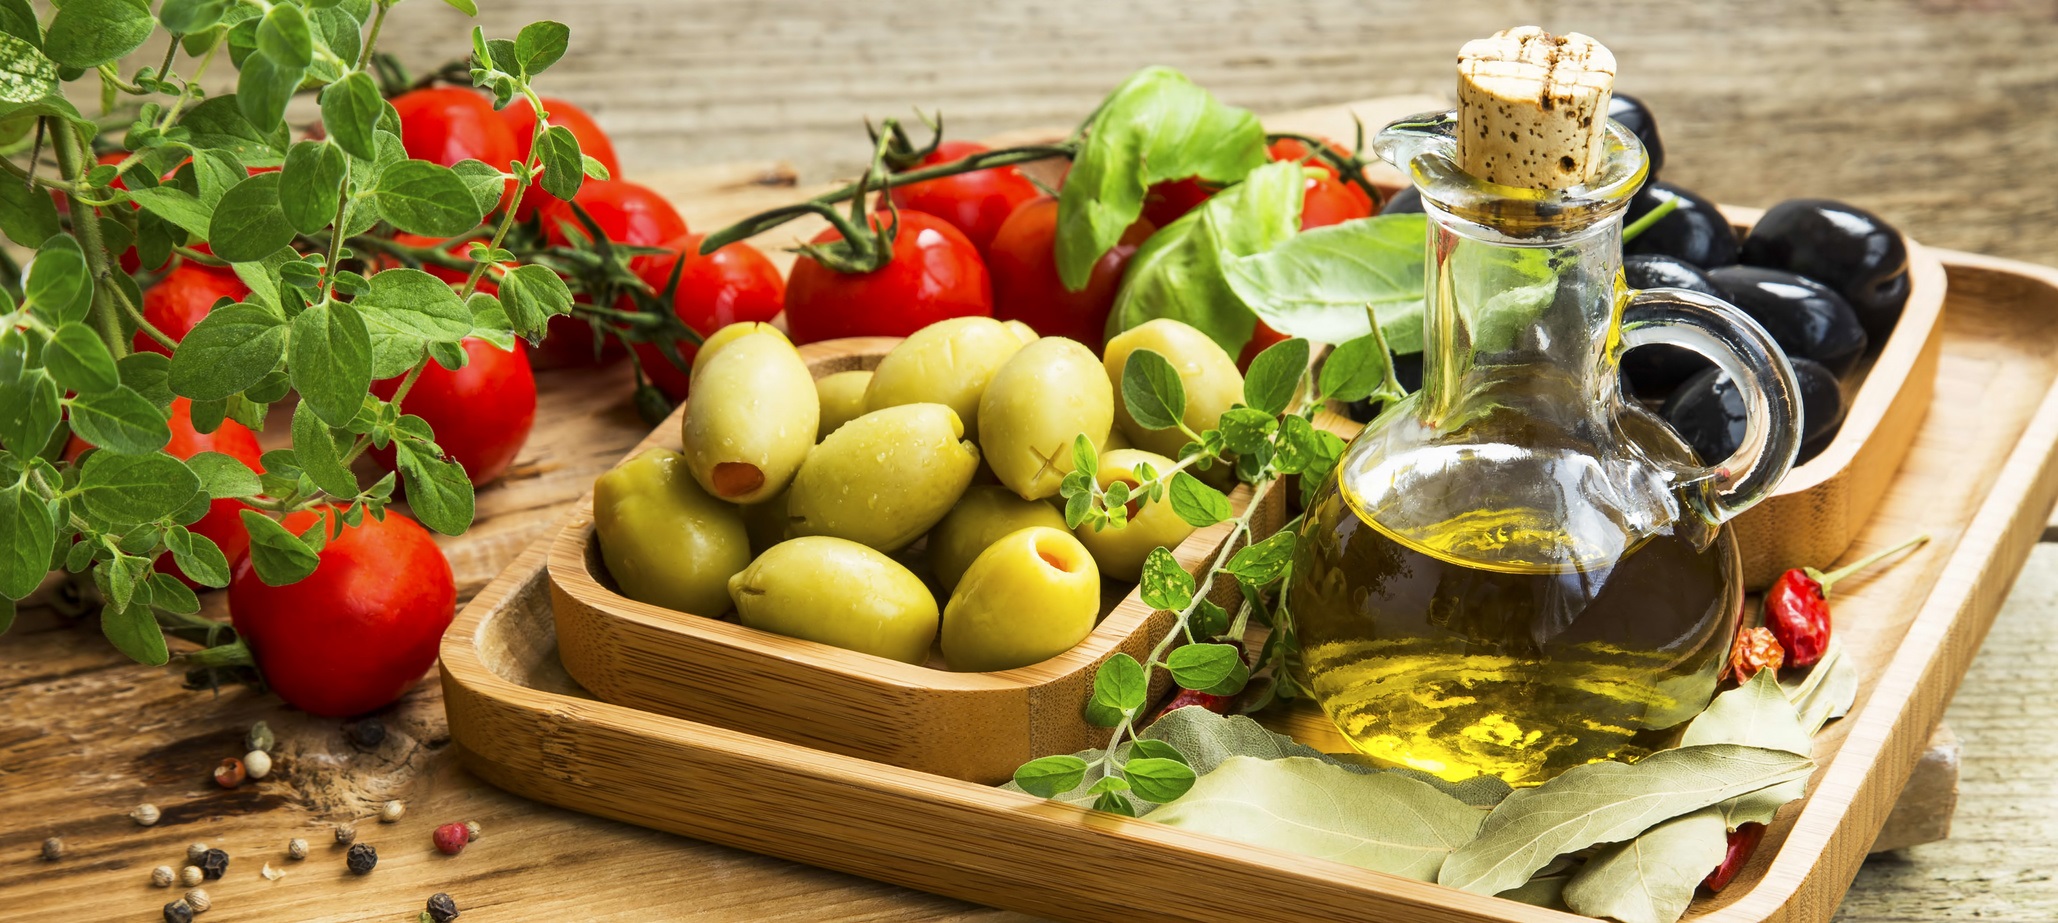 L’huile d’olive occupe une place importante dans le régime méditerranéen. © marrakeshh, Fotolia